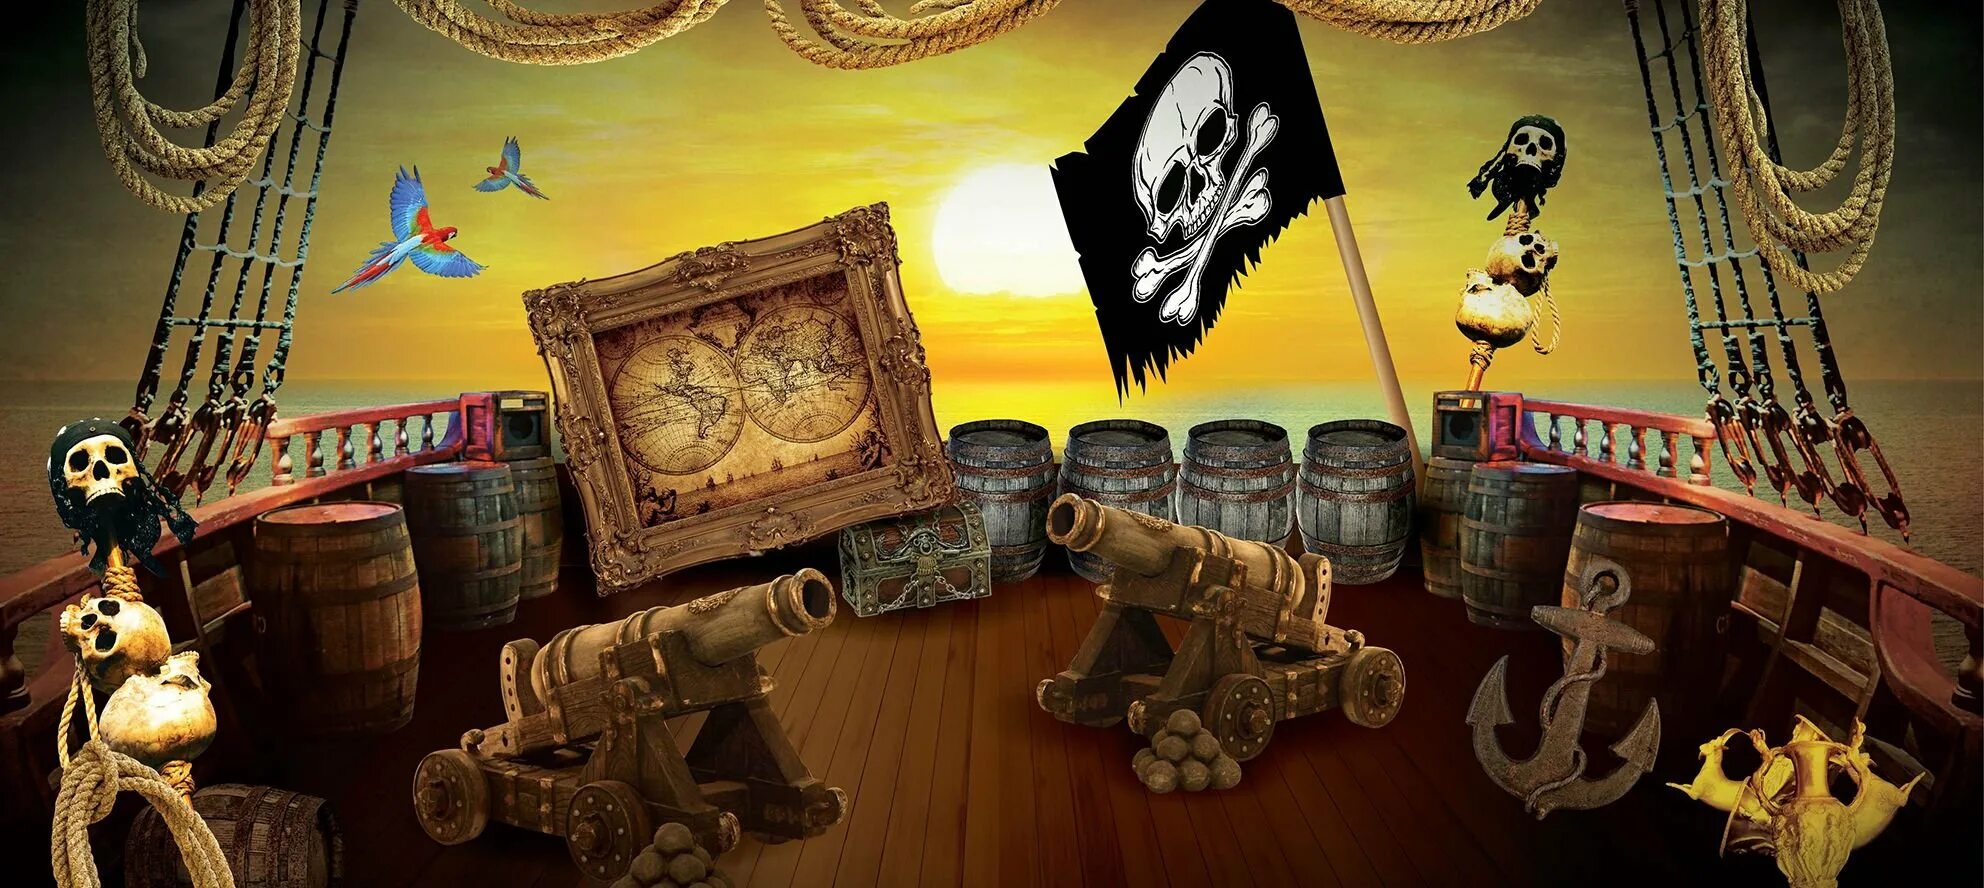 Остров сокровищ Treasure Island. Пиратская тематика. Пиратский корабль. Пиратская фотозона. Приключенческая тематика